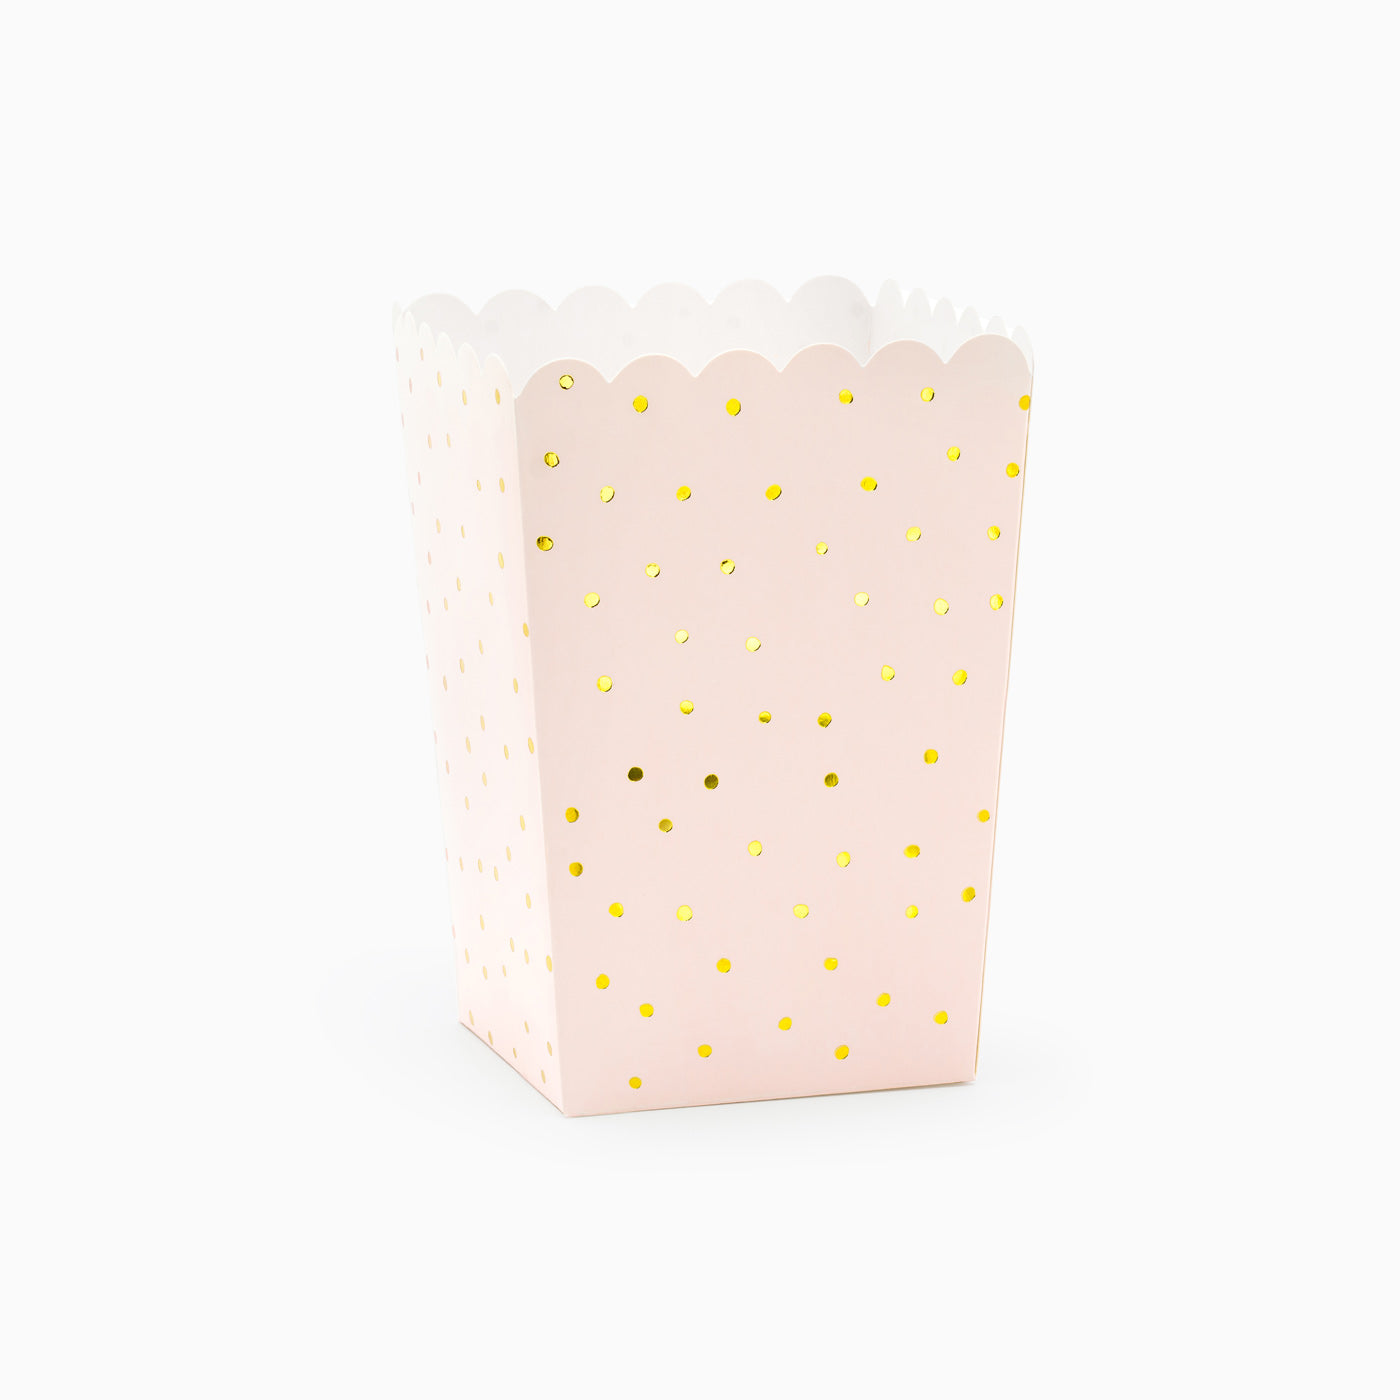 Pastel pink lunar popcorn box